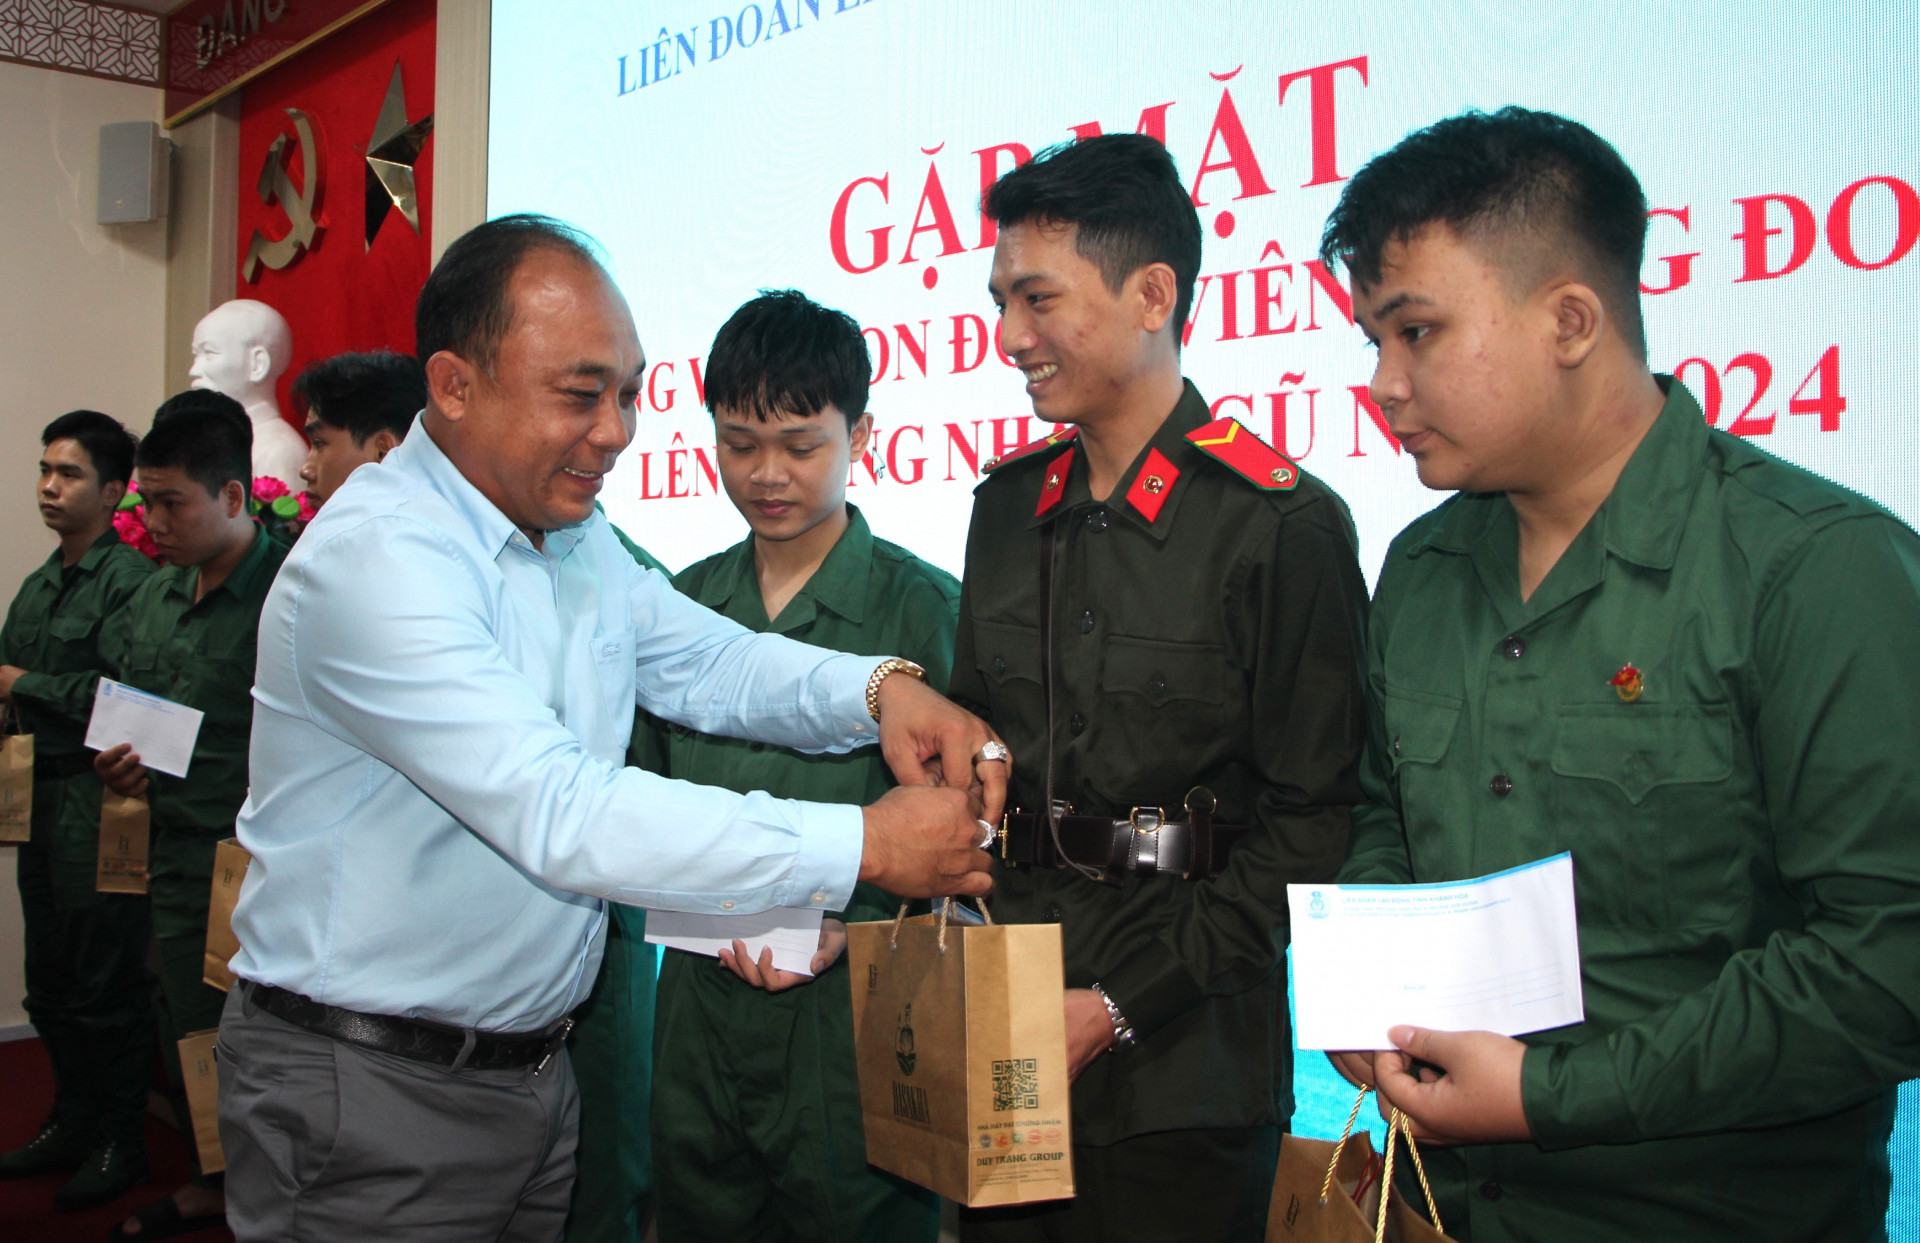 Ông Nguyễn Quang Duy - Tổng Giám đốc ĐT Group tặng quà, đồng viên đoàn viên, con đoàn viên công đoàn lên đường nhập ngũ.